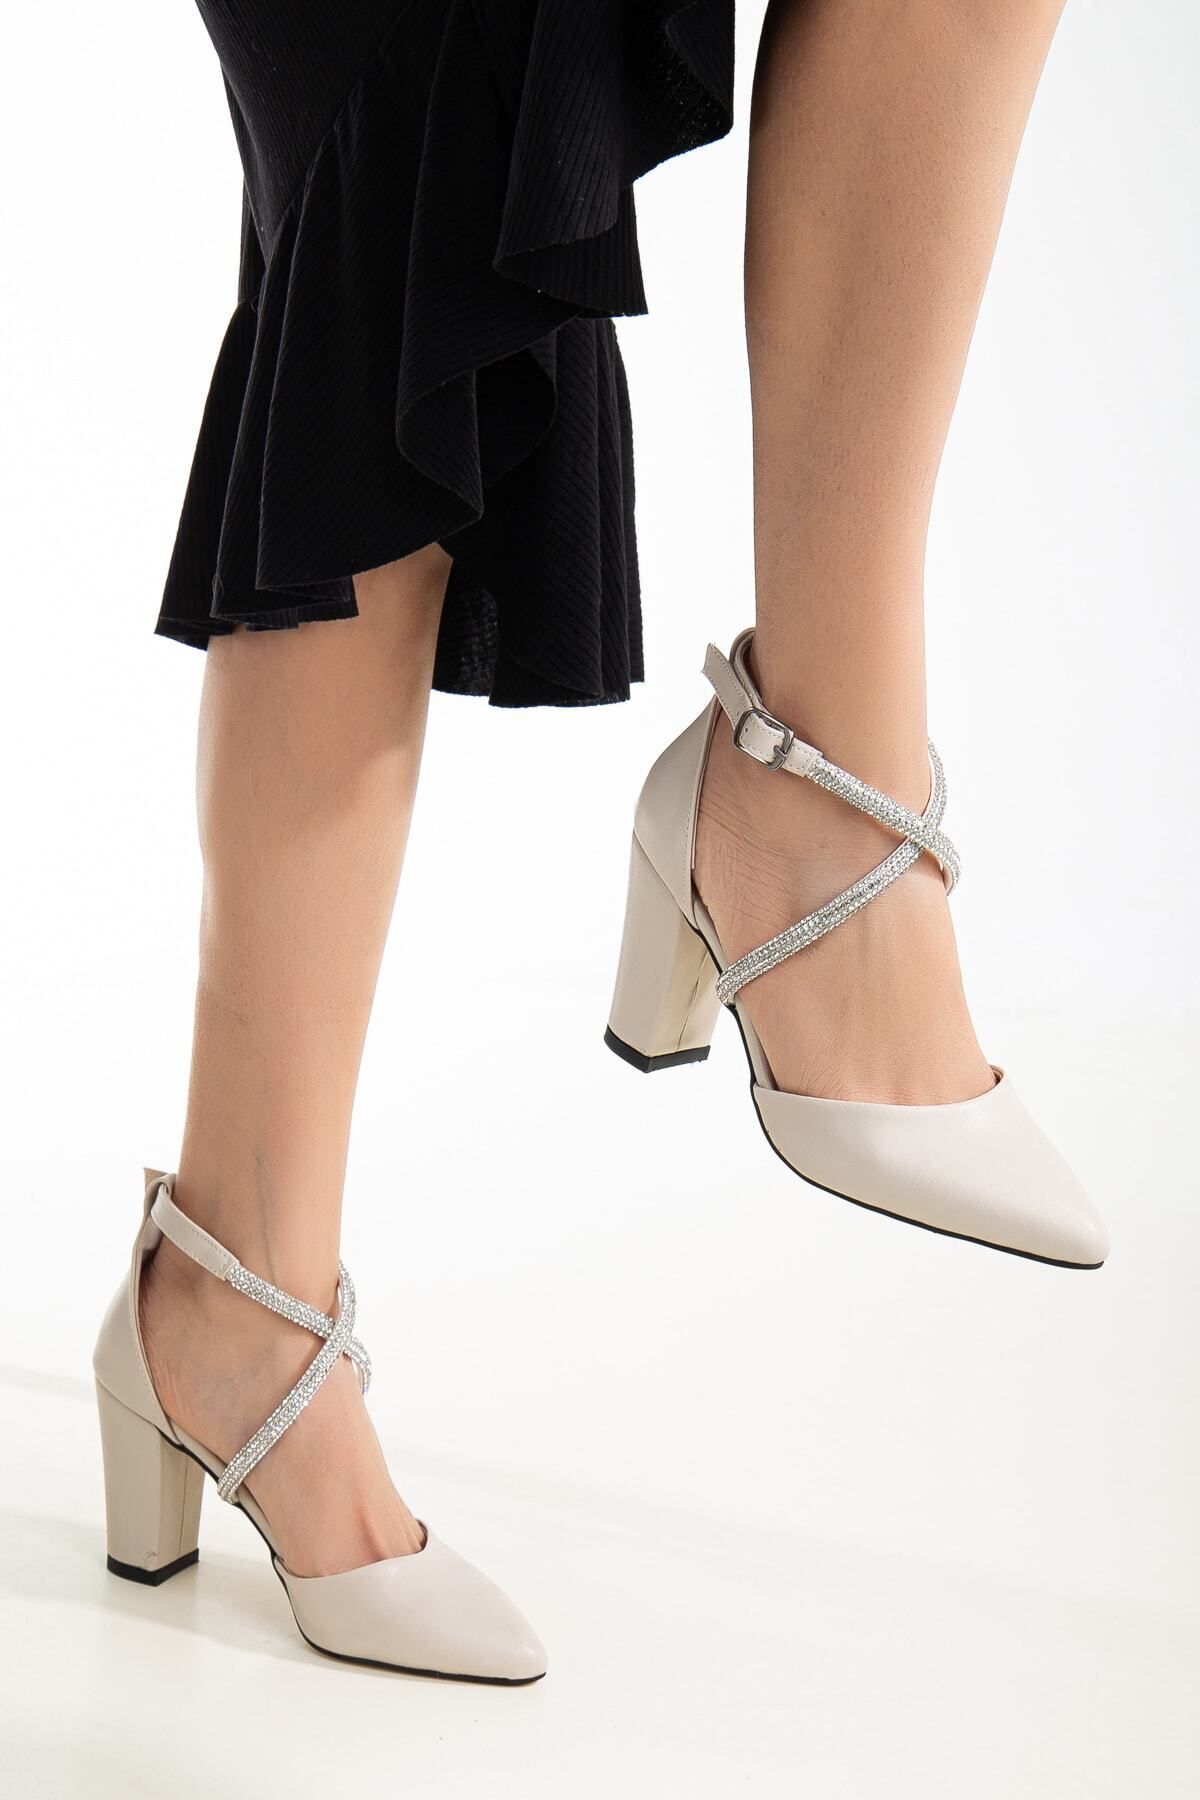 Rabensa Kadın Yeni Sezon Çapraz Taşlı Klasik Topukulku Ayakkabı